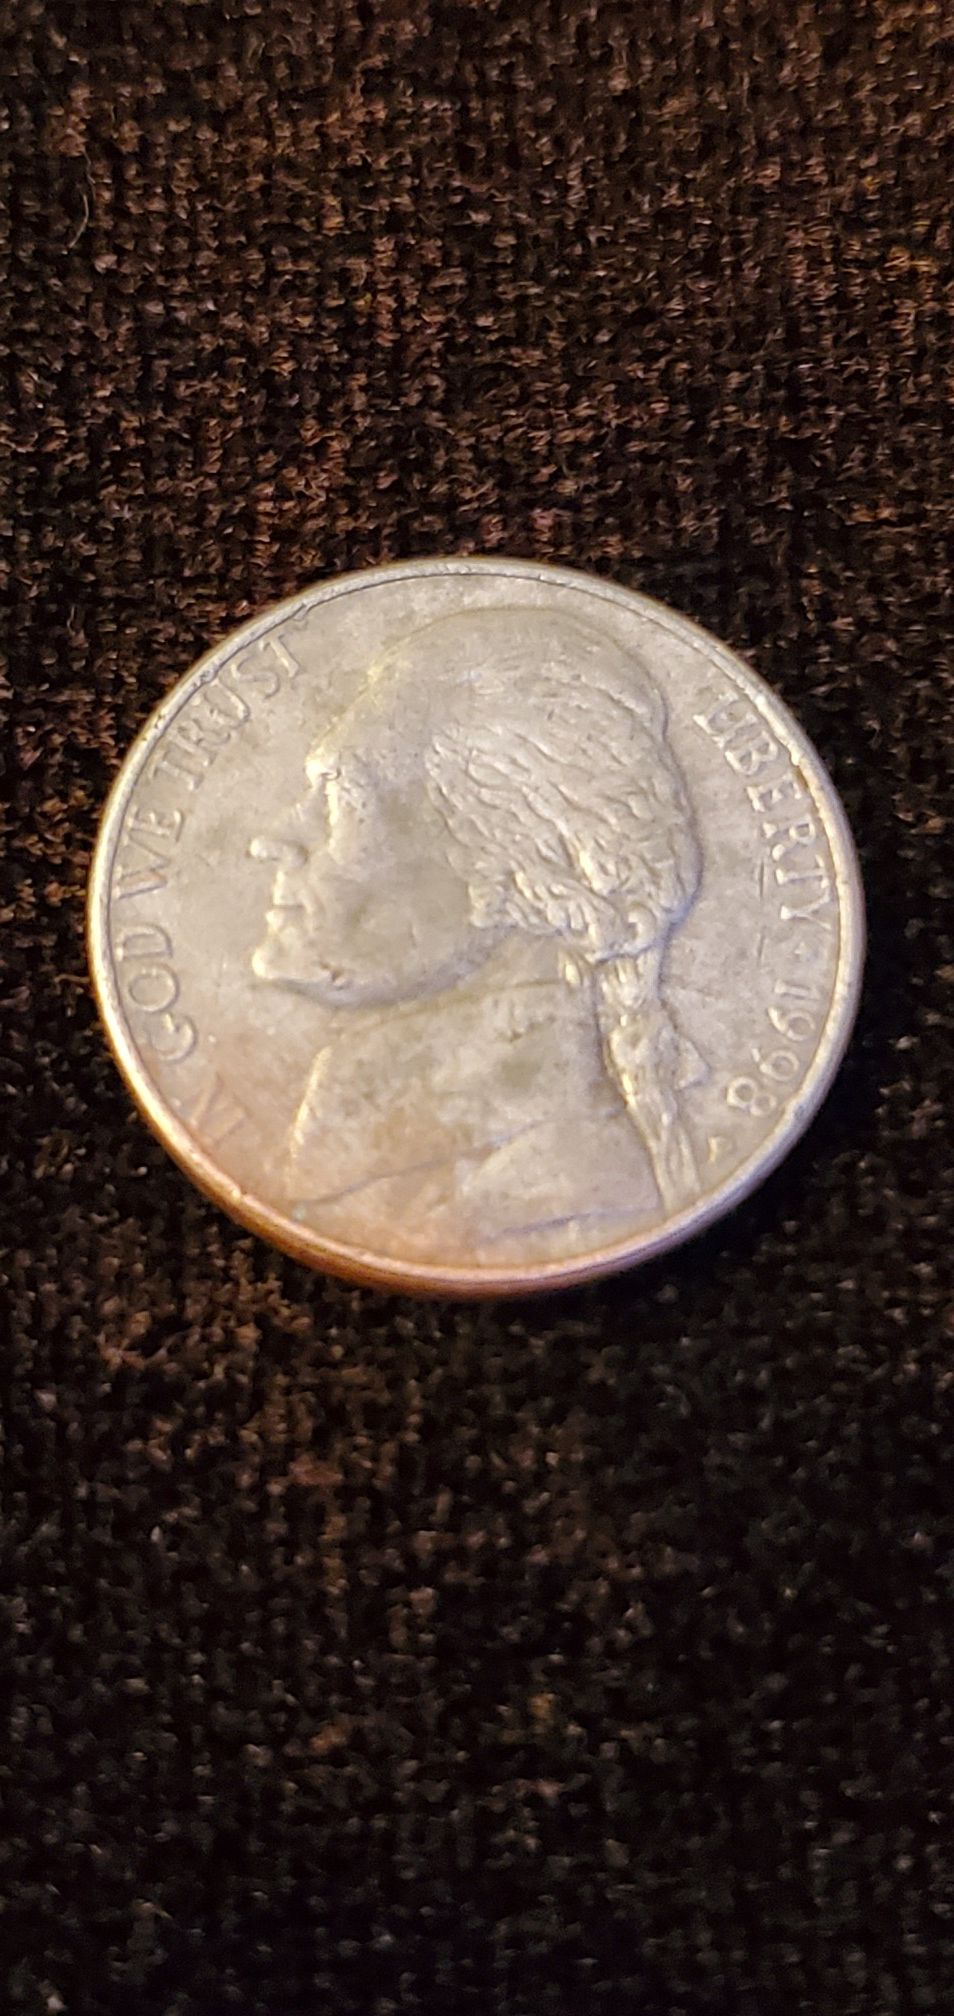 Rare 1998 P Jefferson Nickel